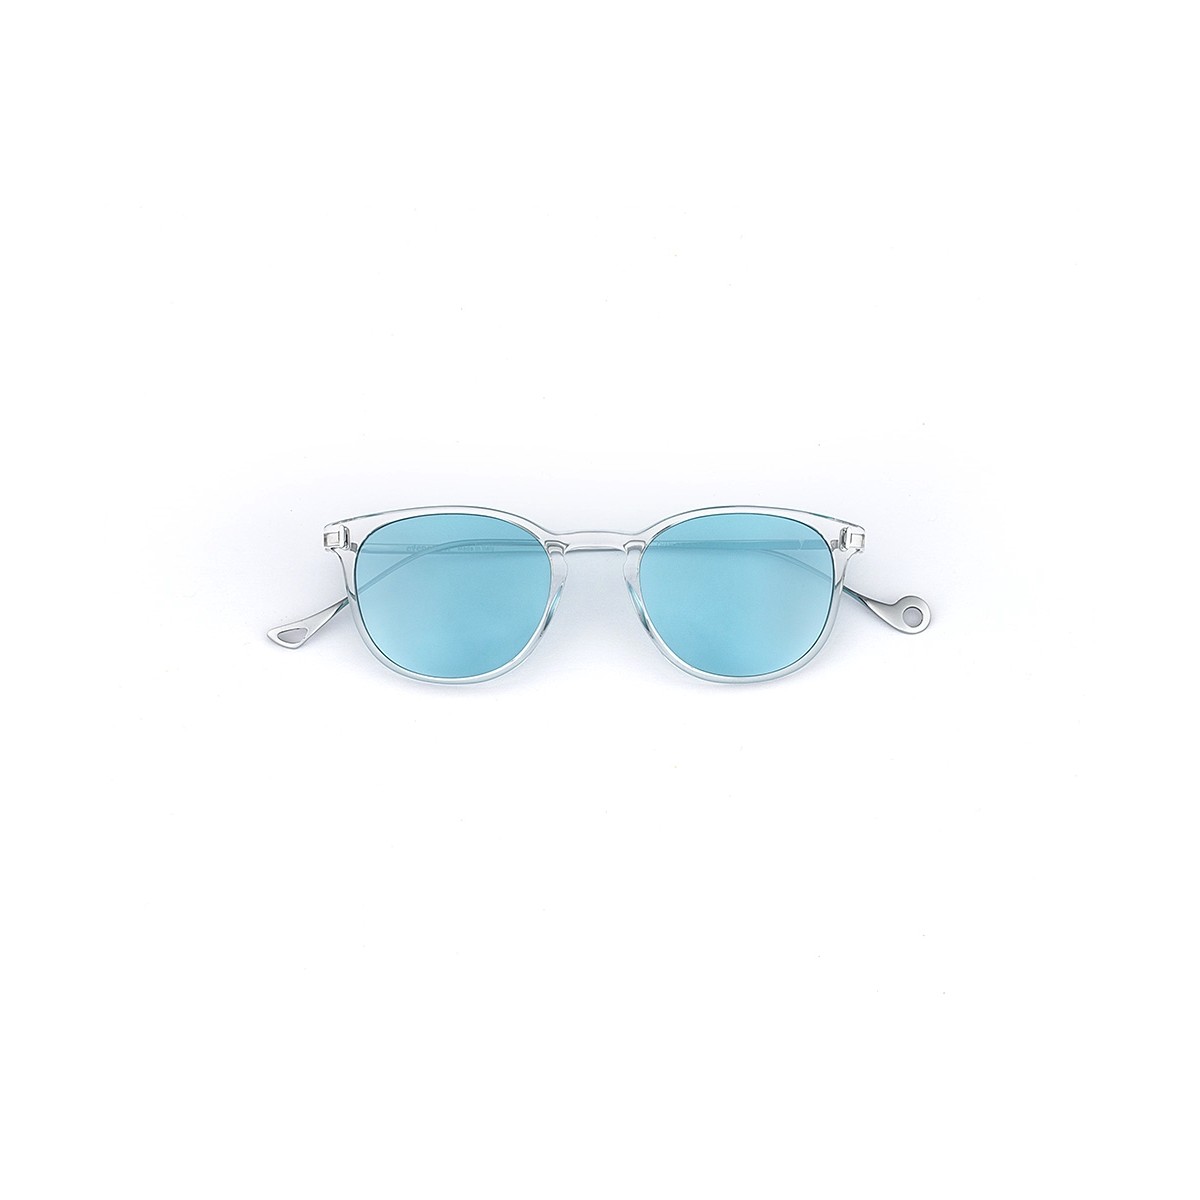 Charles" Eyepetizer sunglasses